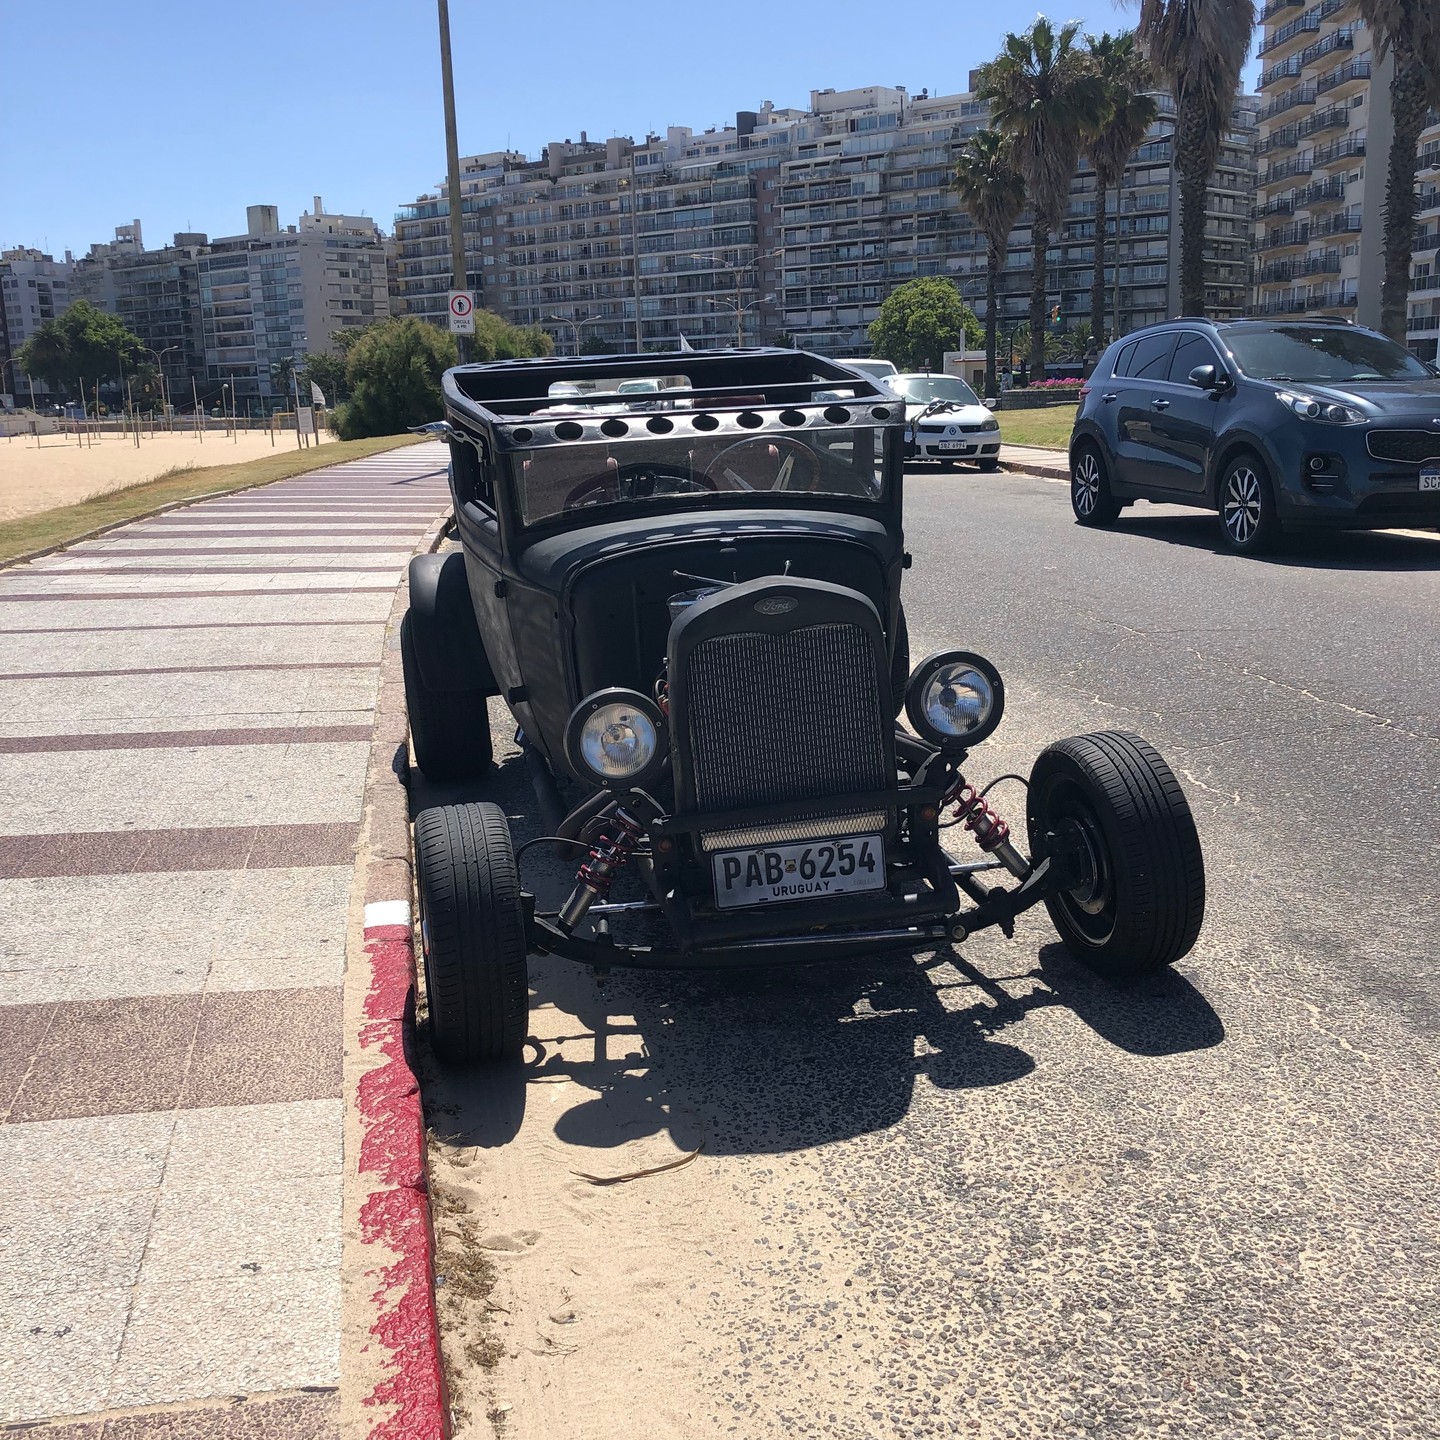 Für alle die auf alten Autos stehen, das Fundstück ist mir in Montevideo ins Augen gesprungen. #montevideo #uruguay #travel #reisen #unterwegs #fun #auto #autos #oldtimer #oldtimercar #schmuckstück #amstrand